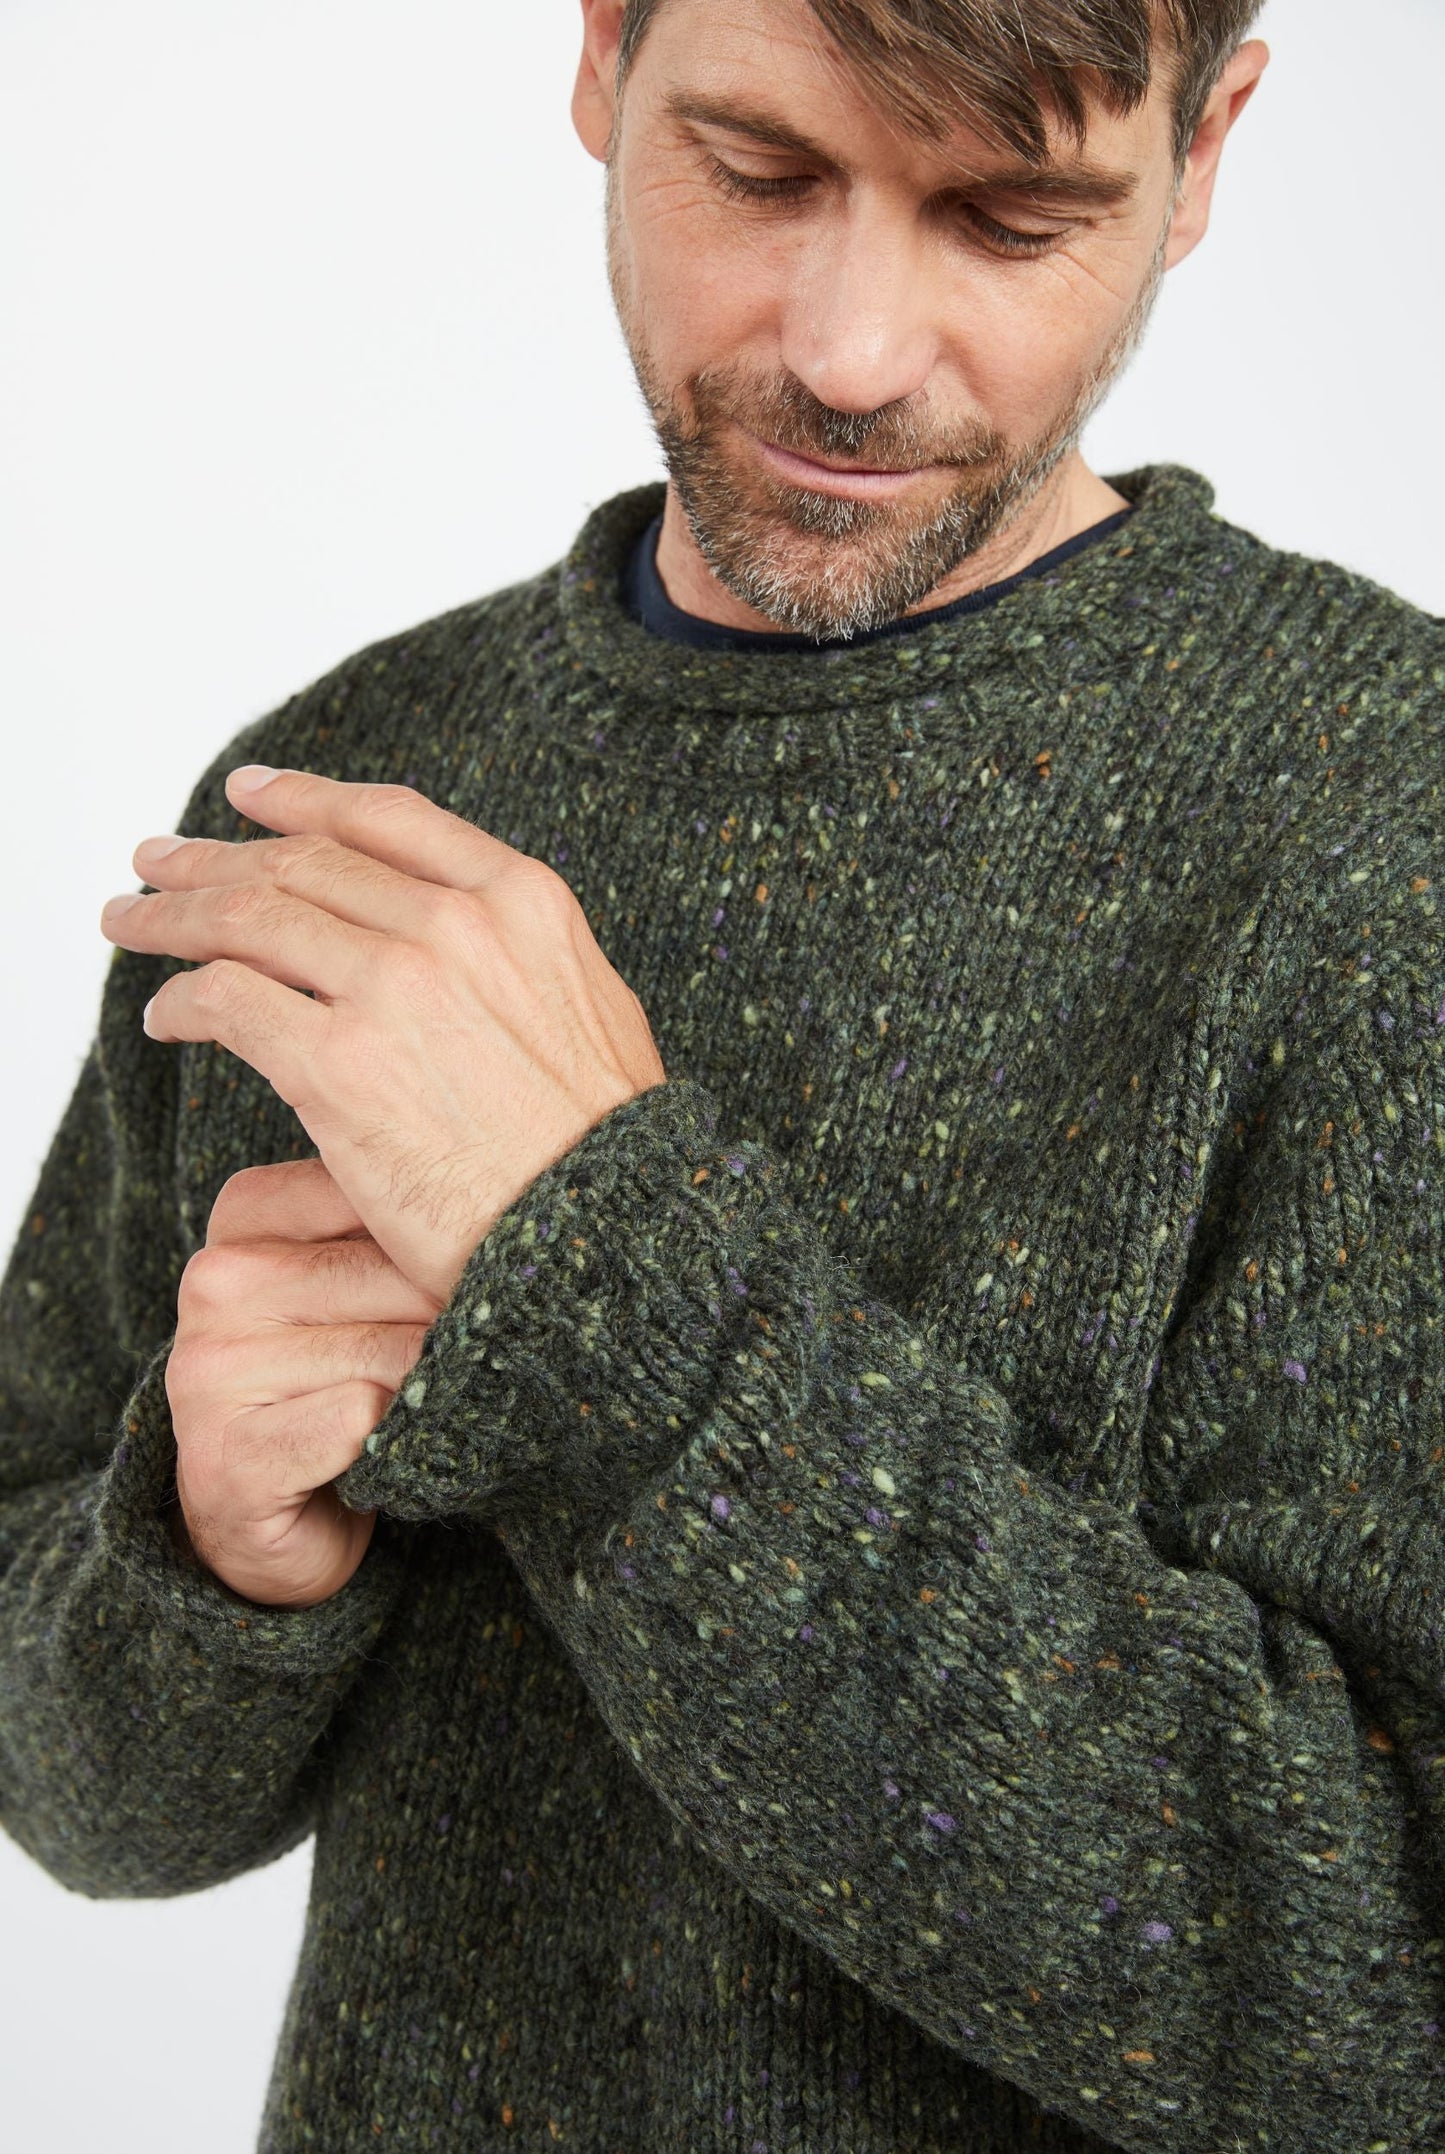 Raheen Tweed Rollneck Men's Sweater - Green